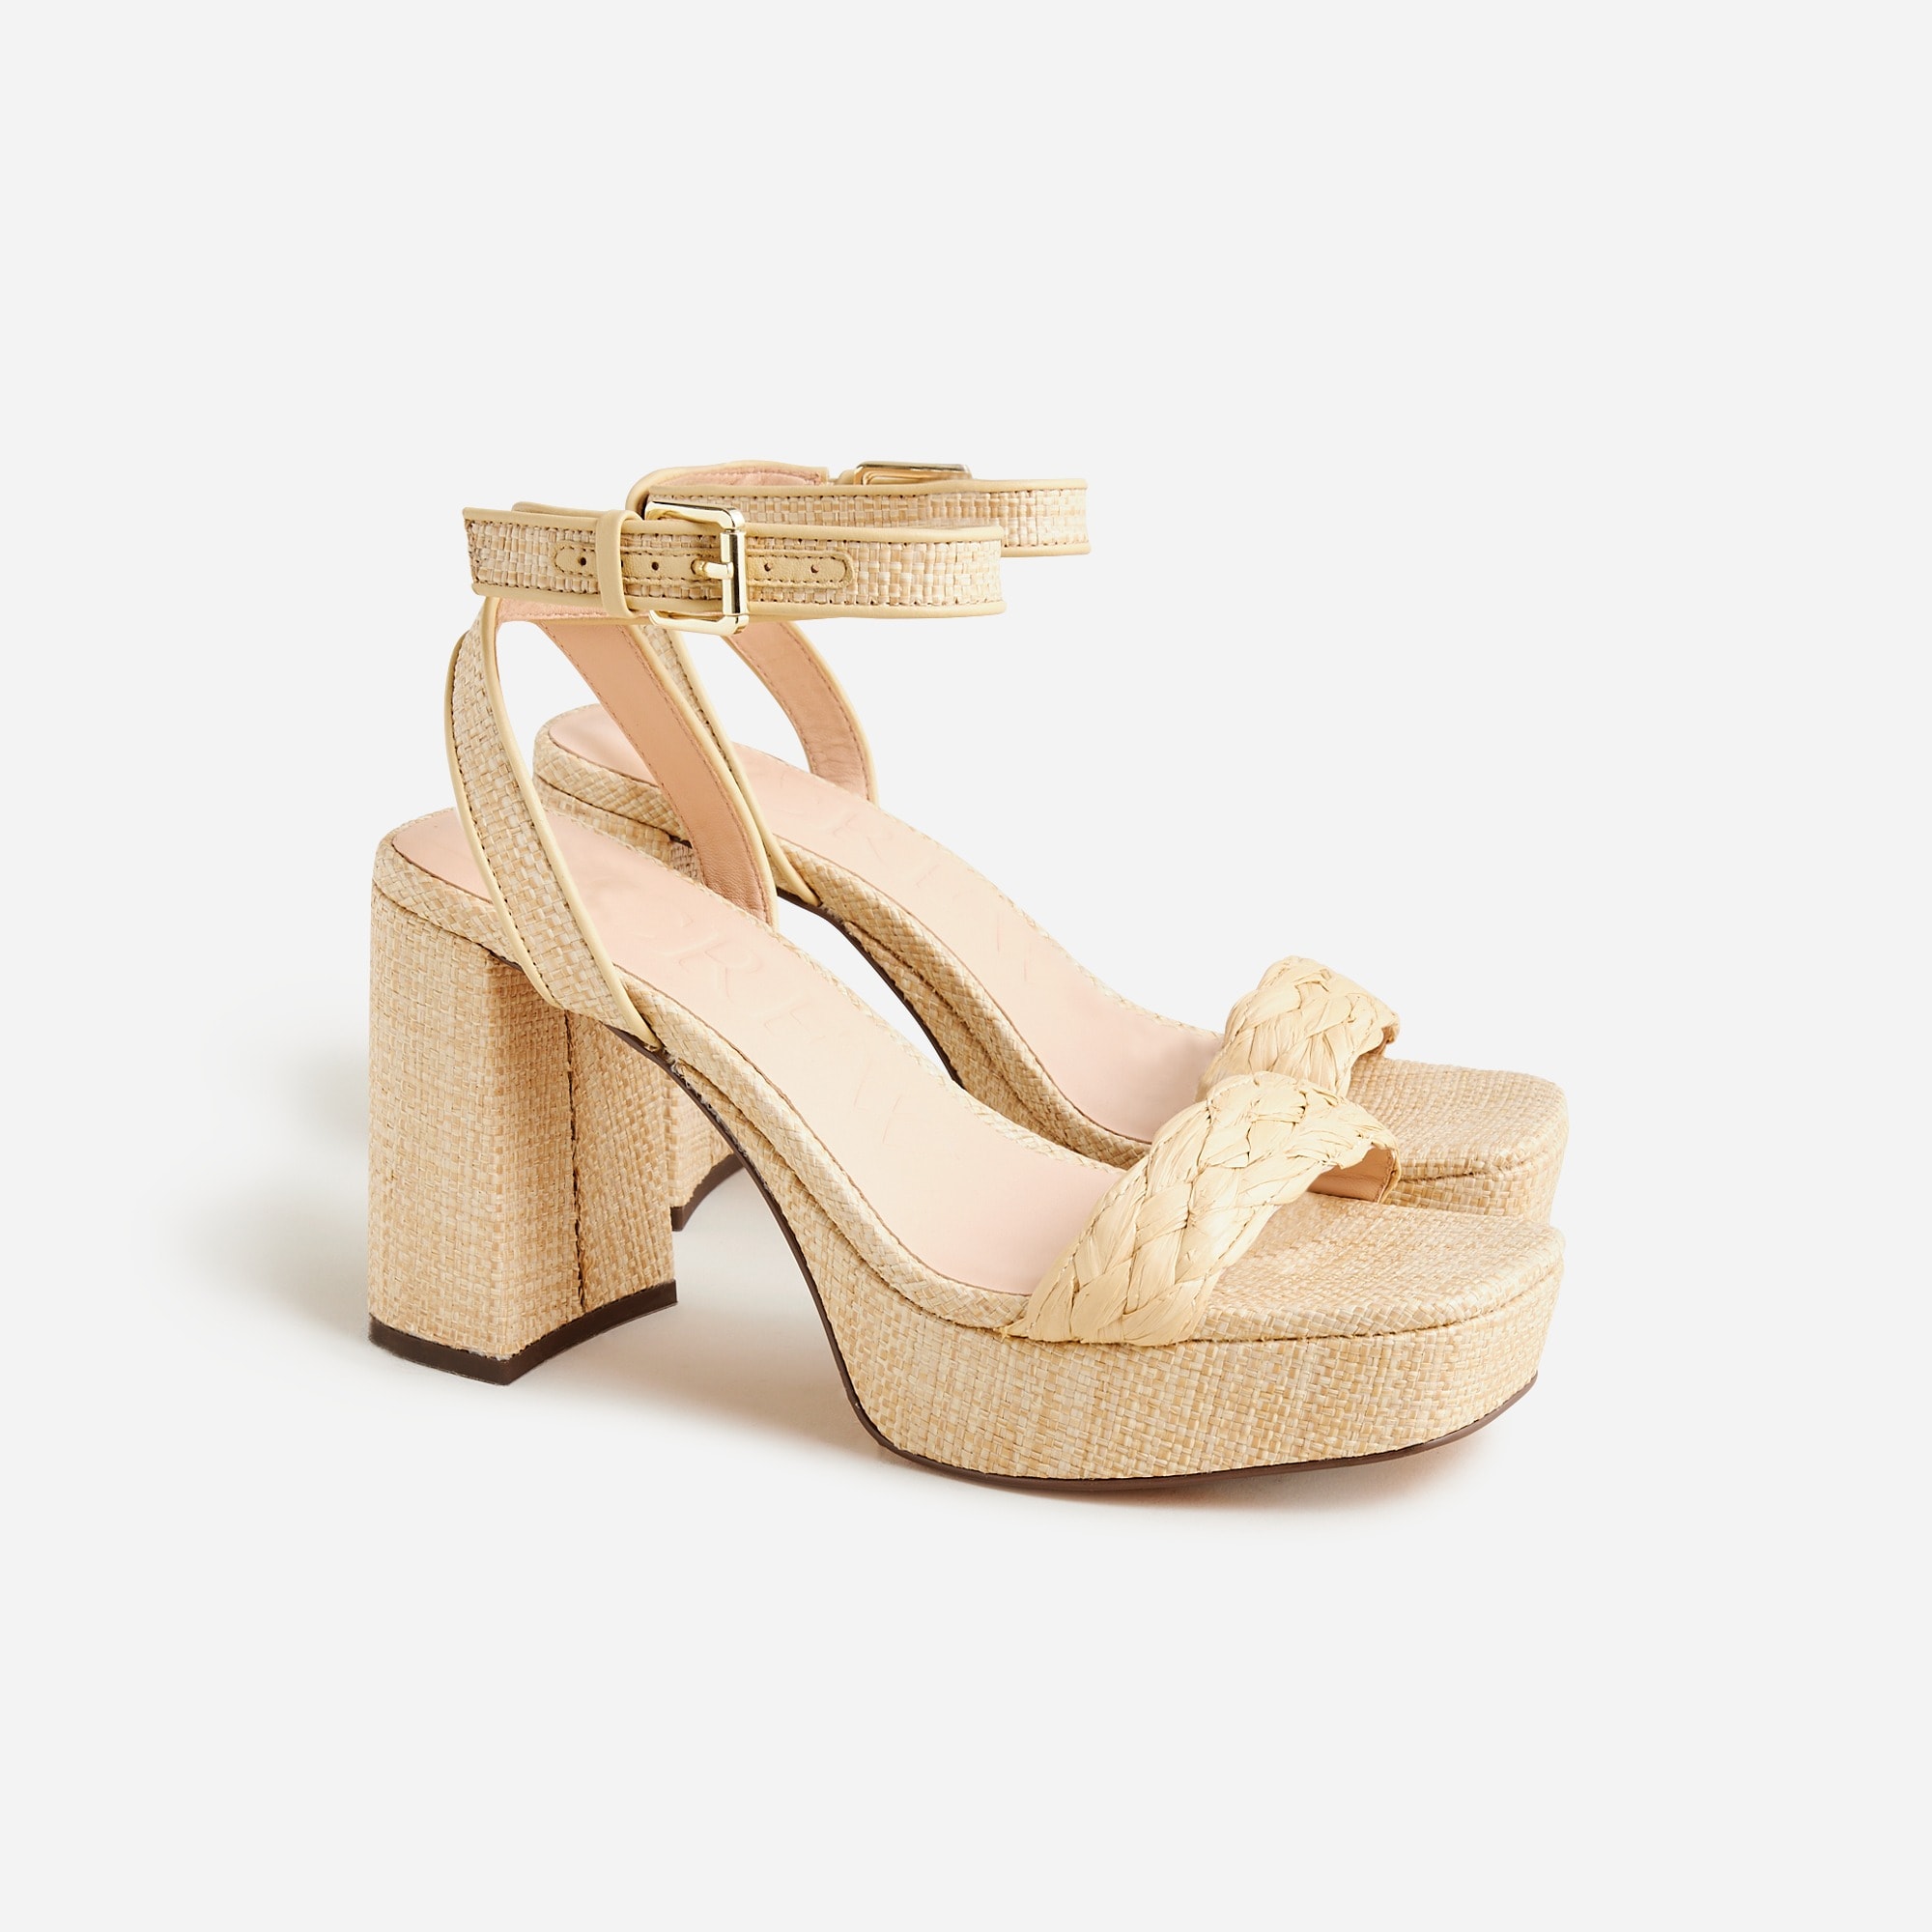  Ankle-strap platform heels in faux raffia